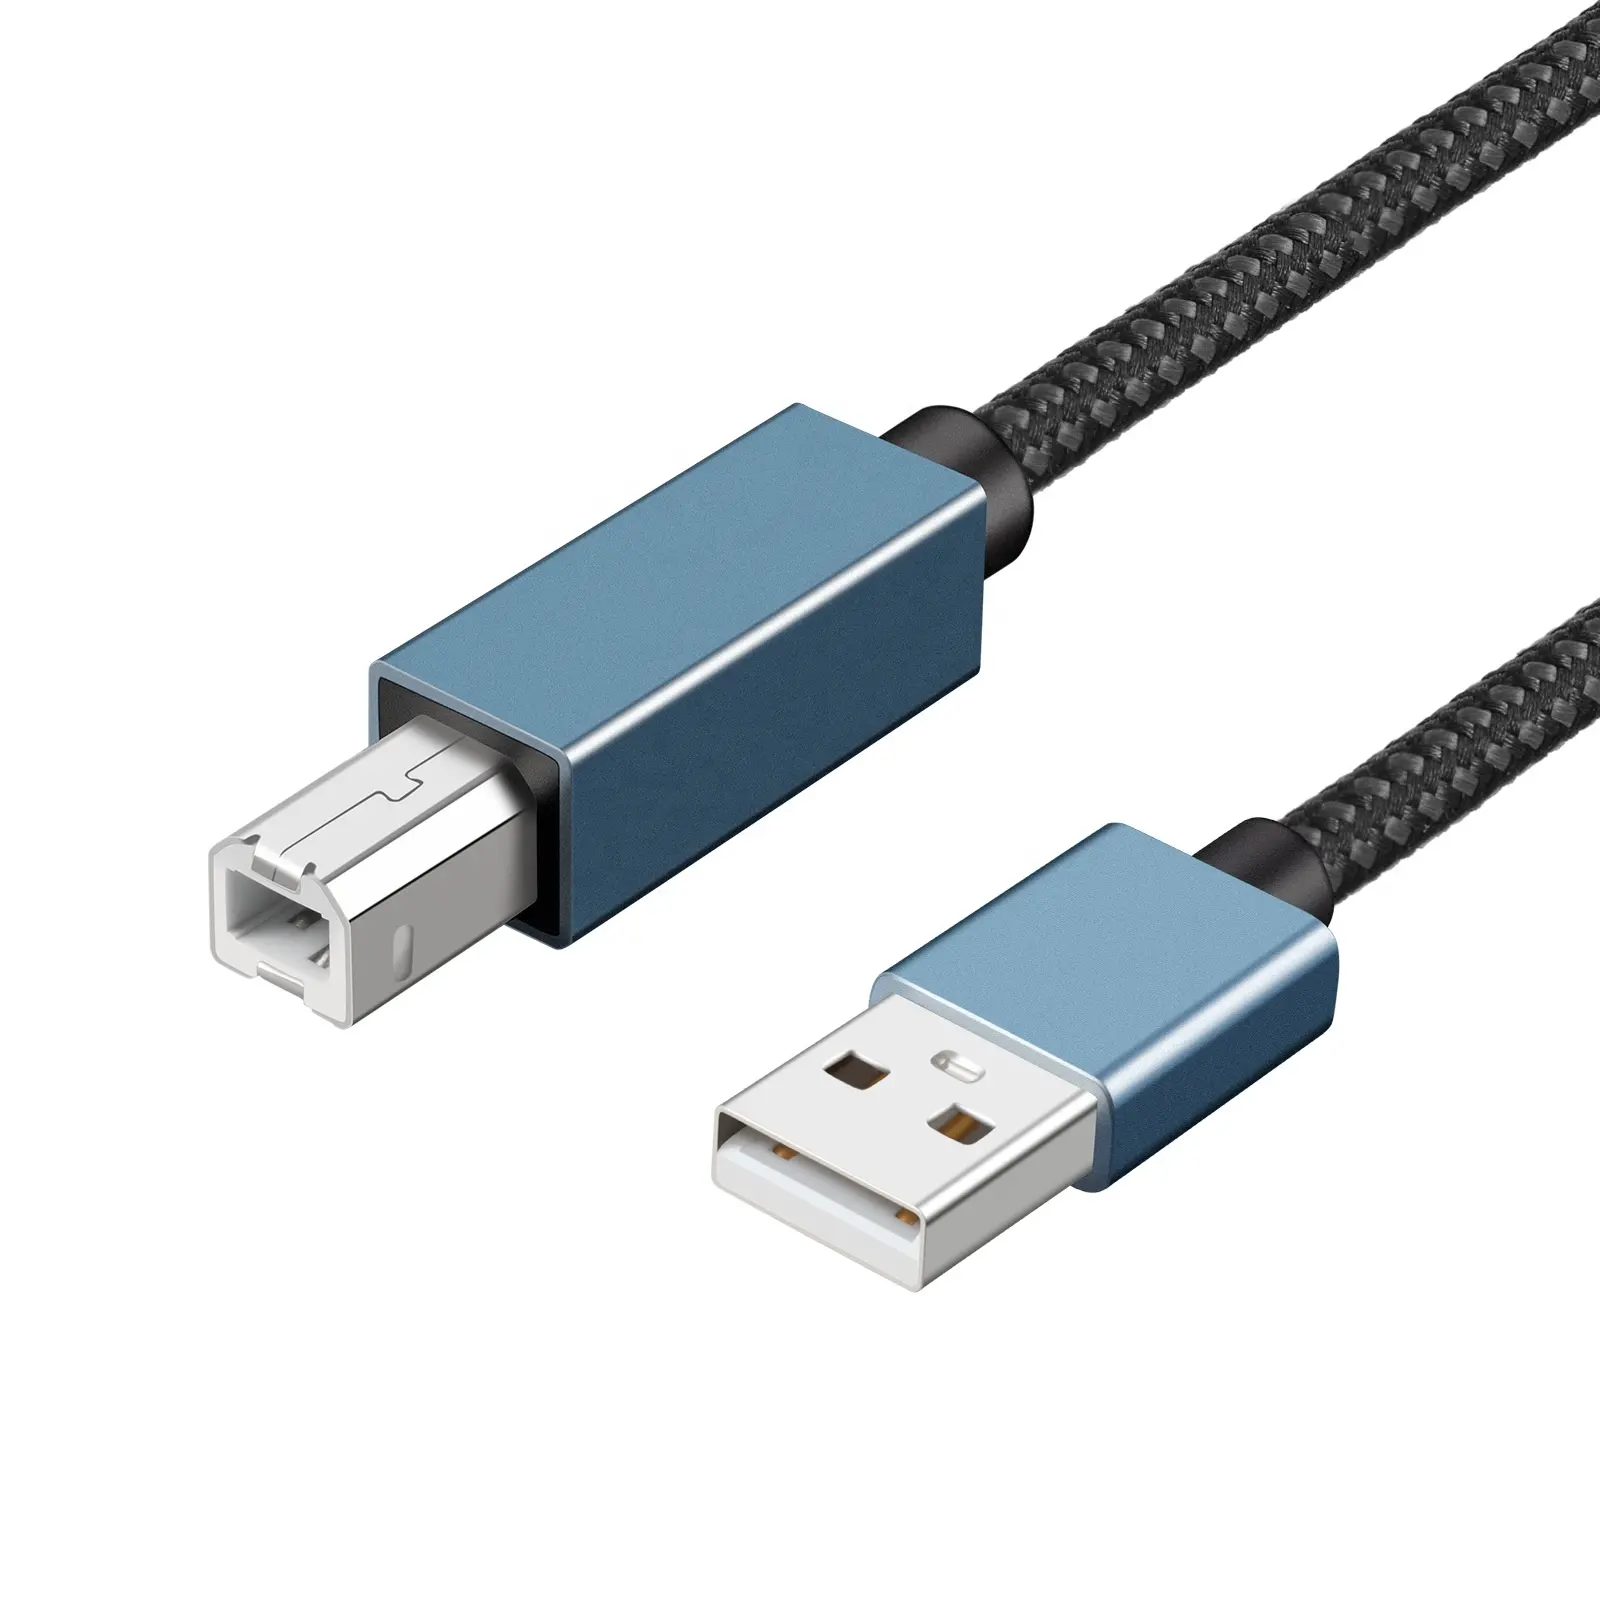 Hochwertiges Nylon geflochtenes Typ C-Datensynchronisationsdrucker-Datenkabel USB 2.0 A-Stecker auf B-Stecker für Datenübertragungs-Festplatte